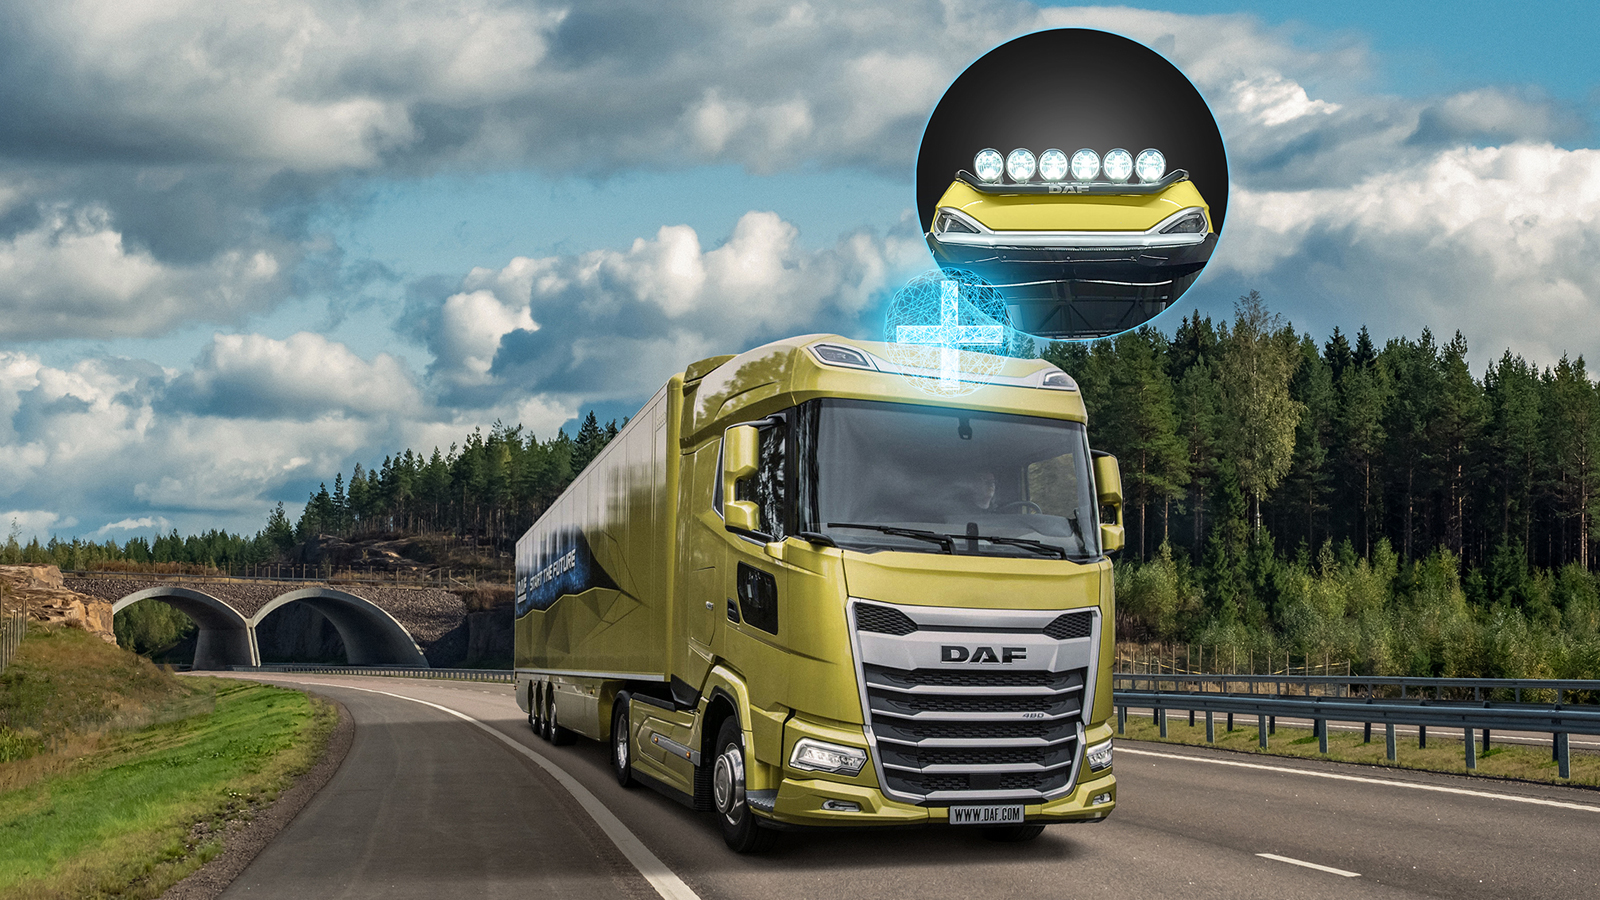 Phares longue-portée LED pour la nouvelle génération DAF- DAF Trucks  Belgique / Luxembourg